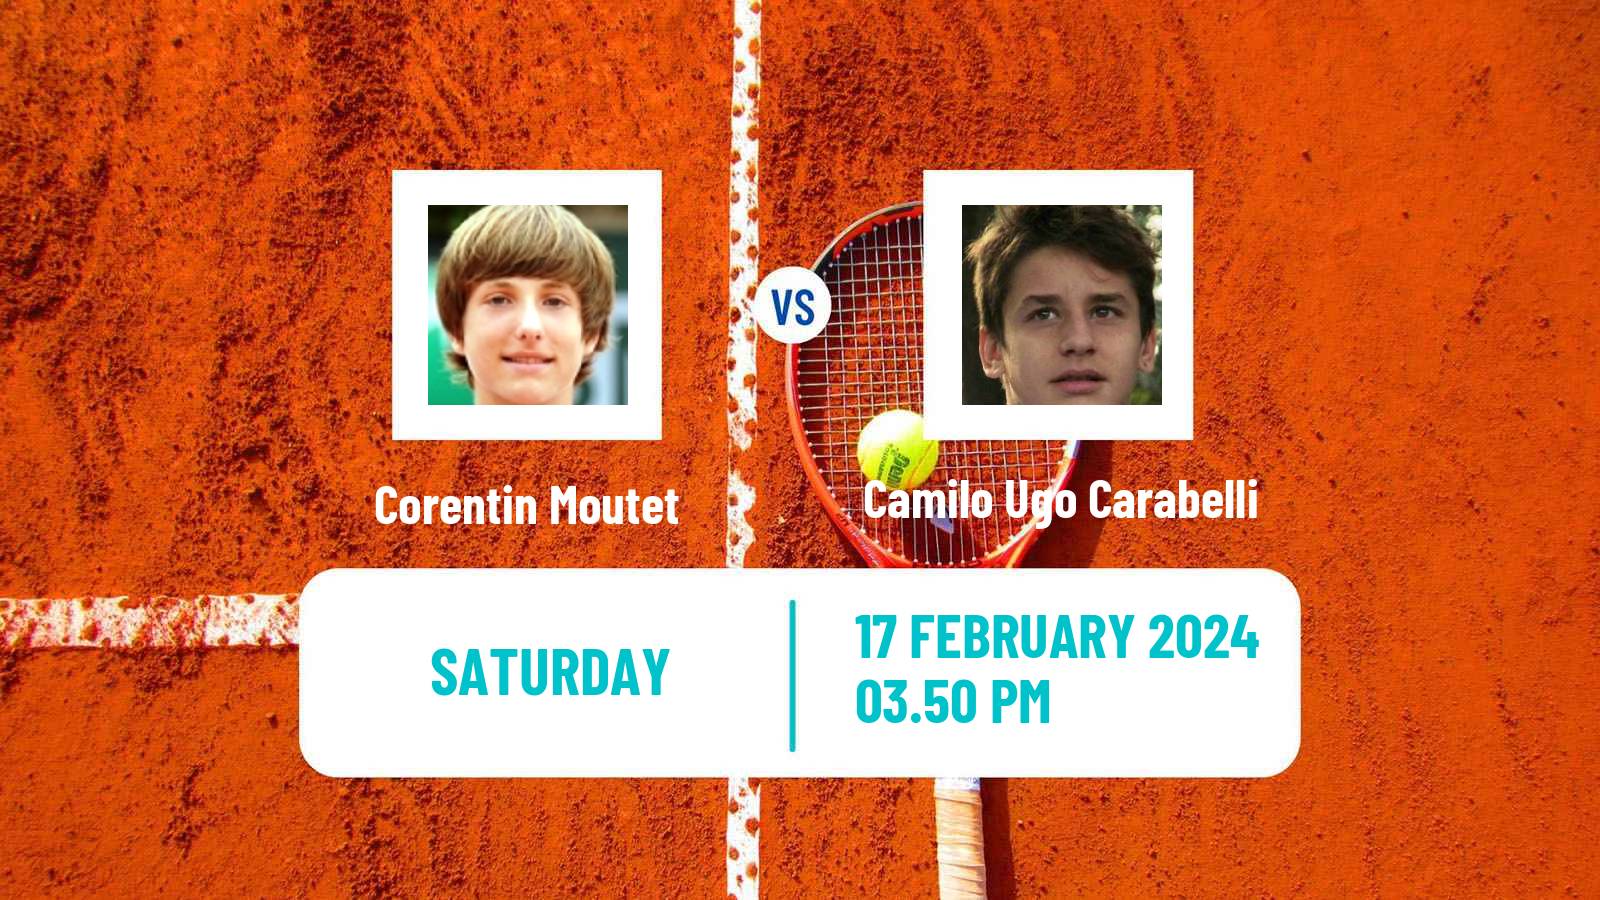 Tennis ATP Rio de Janeiro Corentin Moutet - Camilo Ugo Carabelli